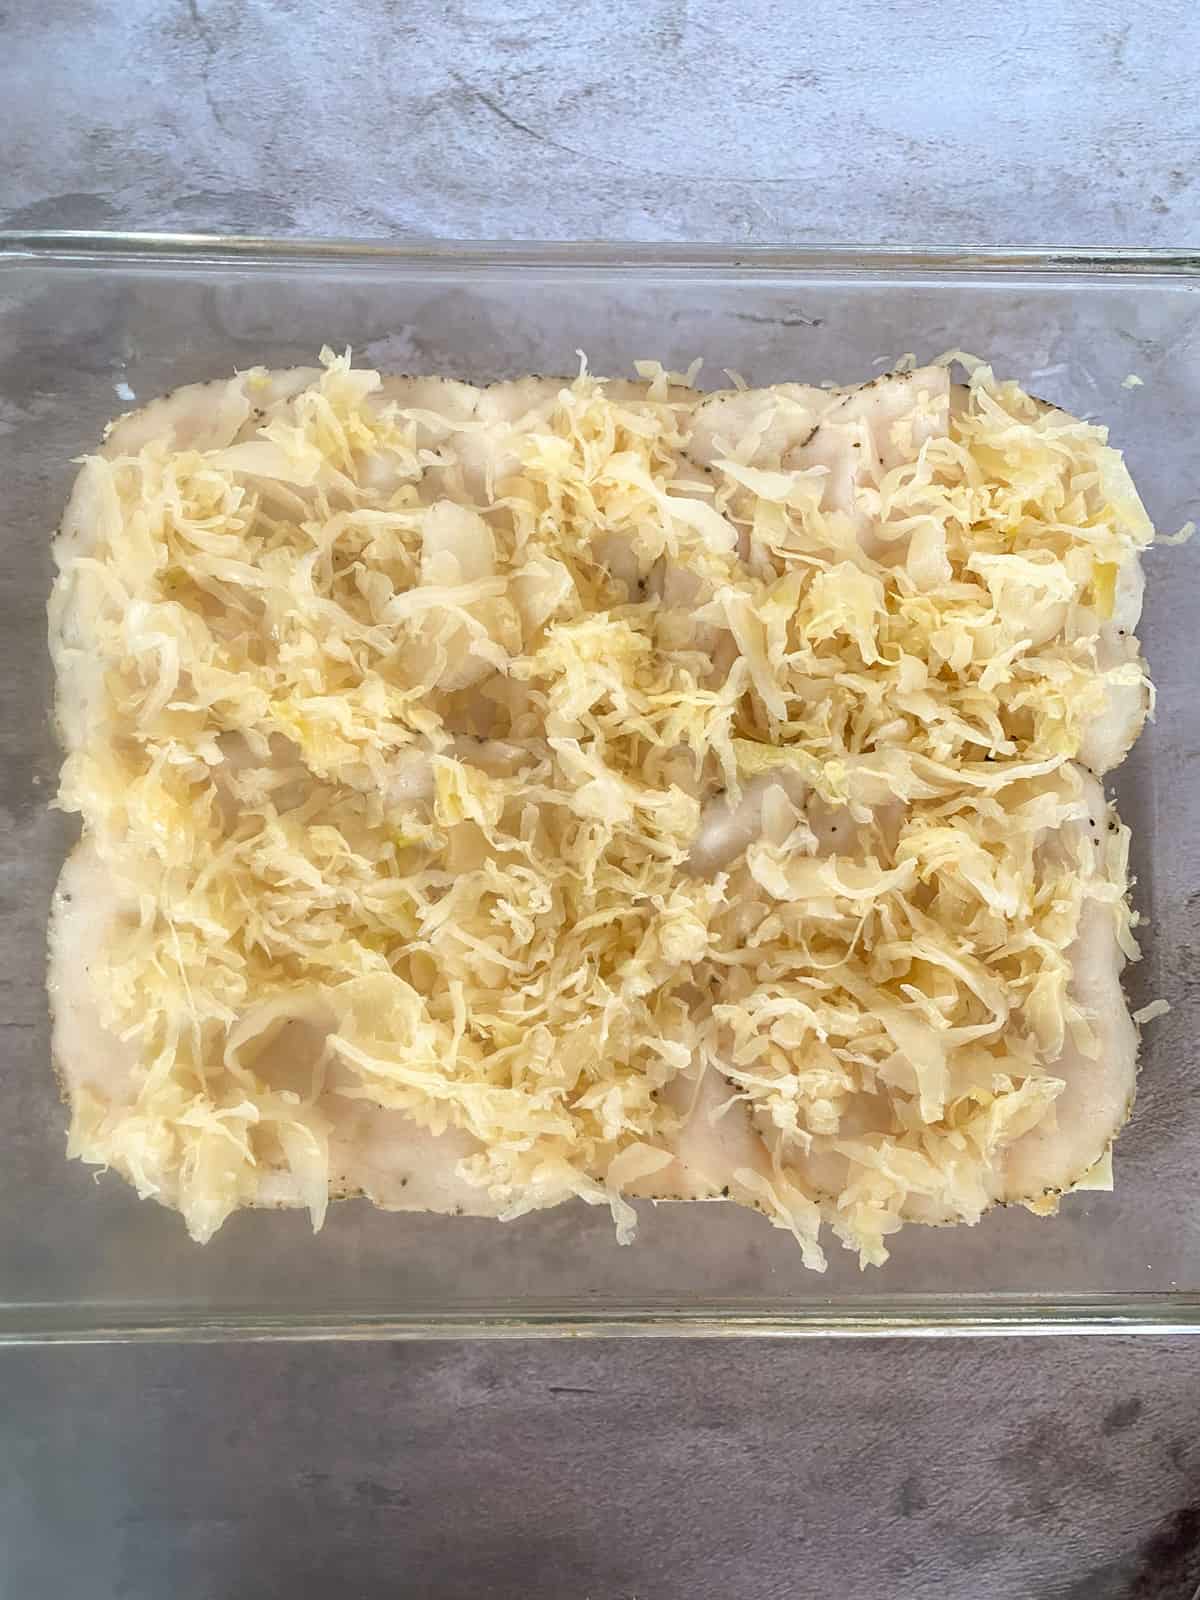 the sauerkraut layer of the sliders